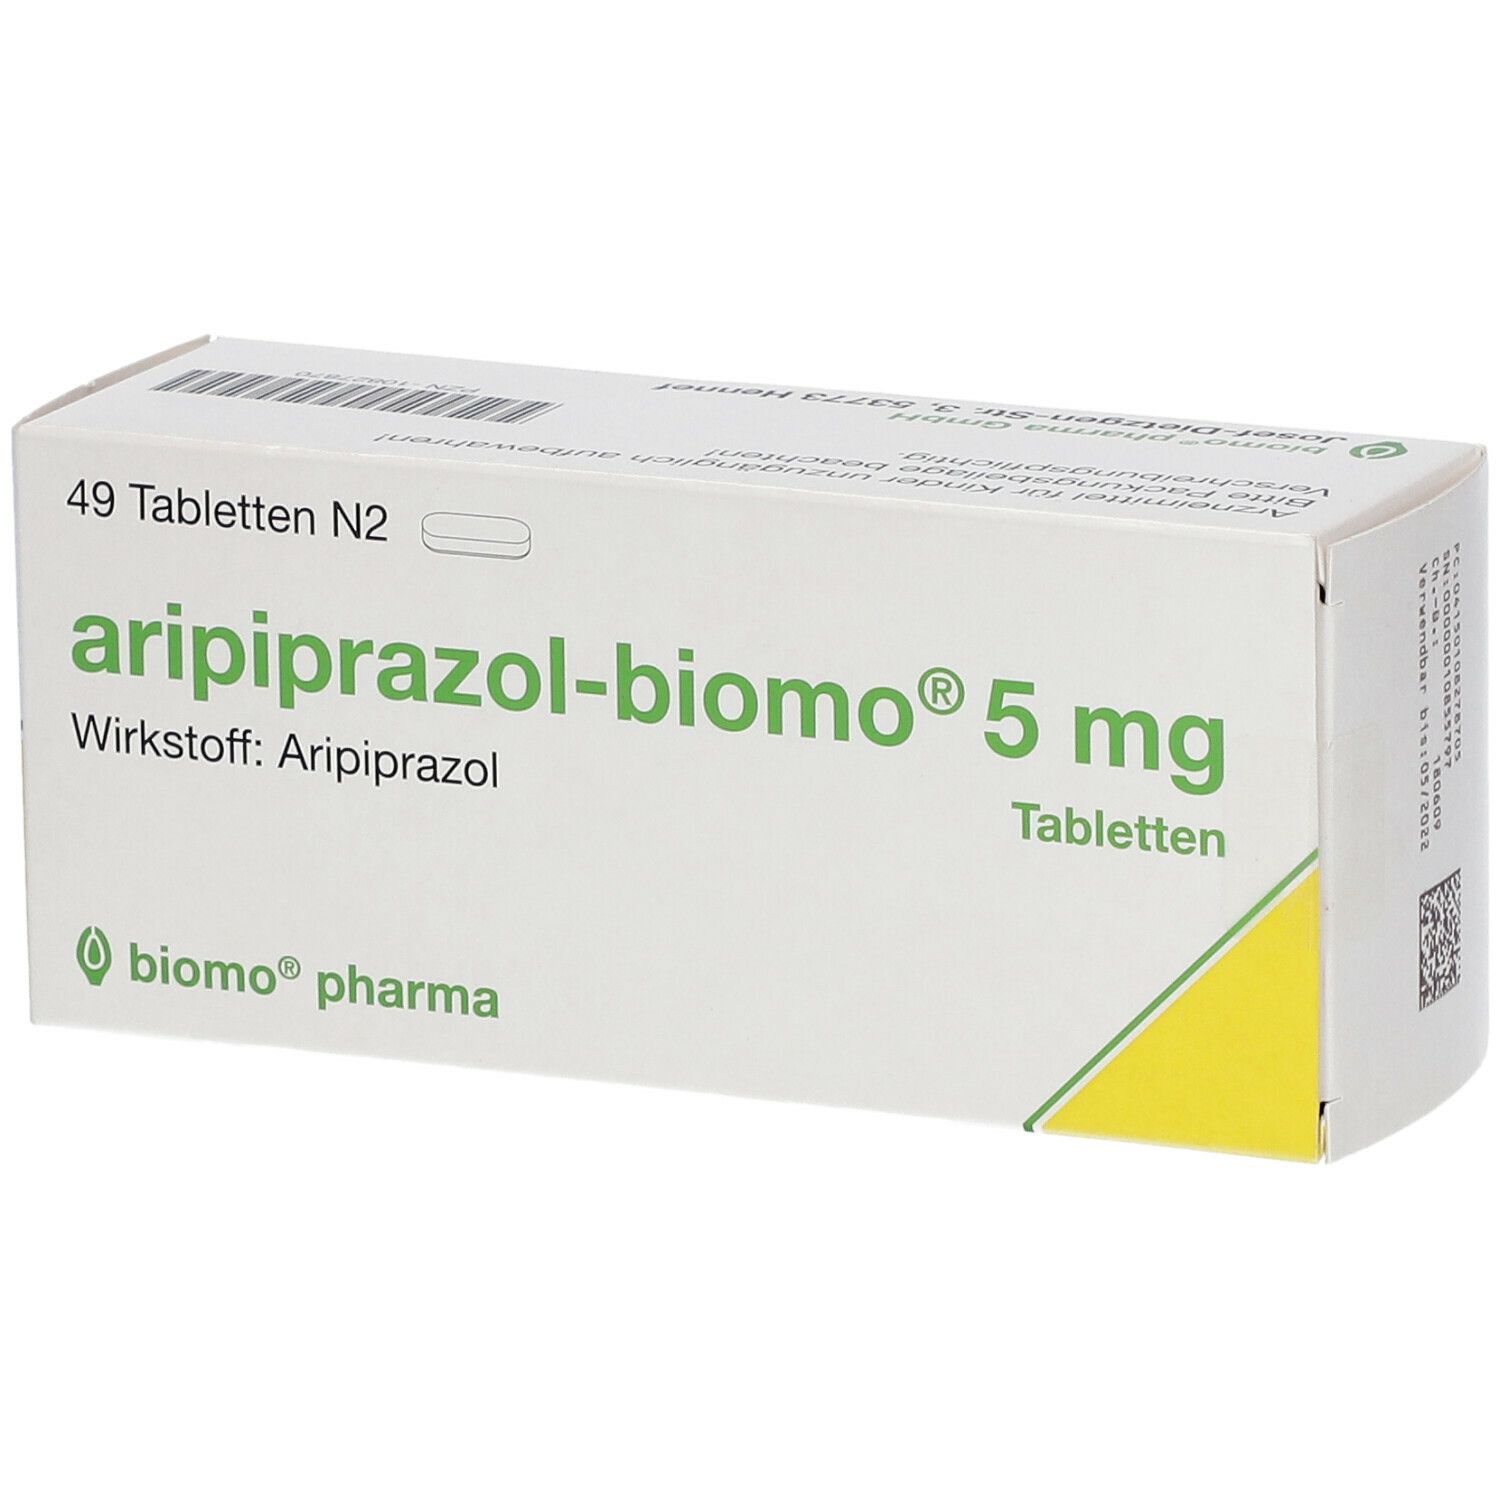 aripiprazol-biomo® 5 mg